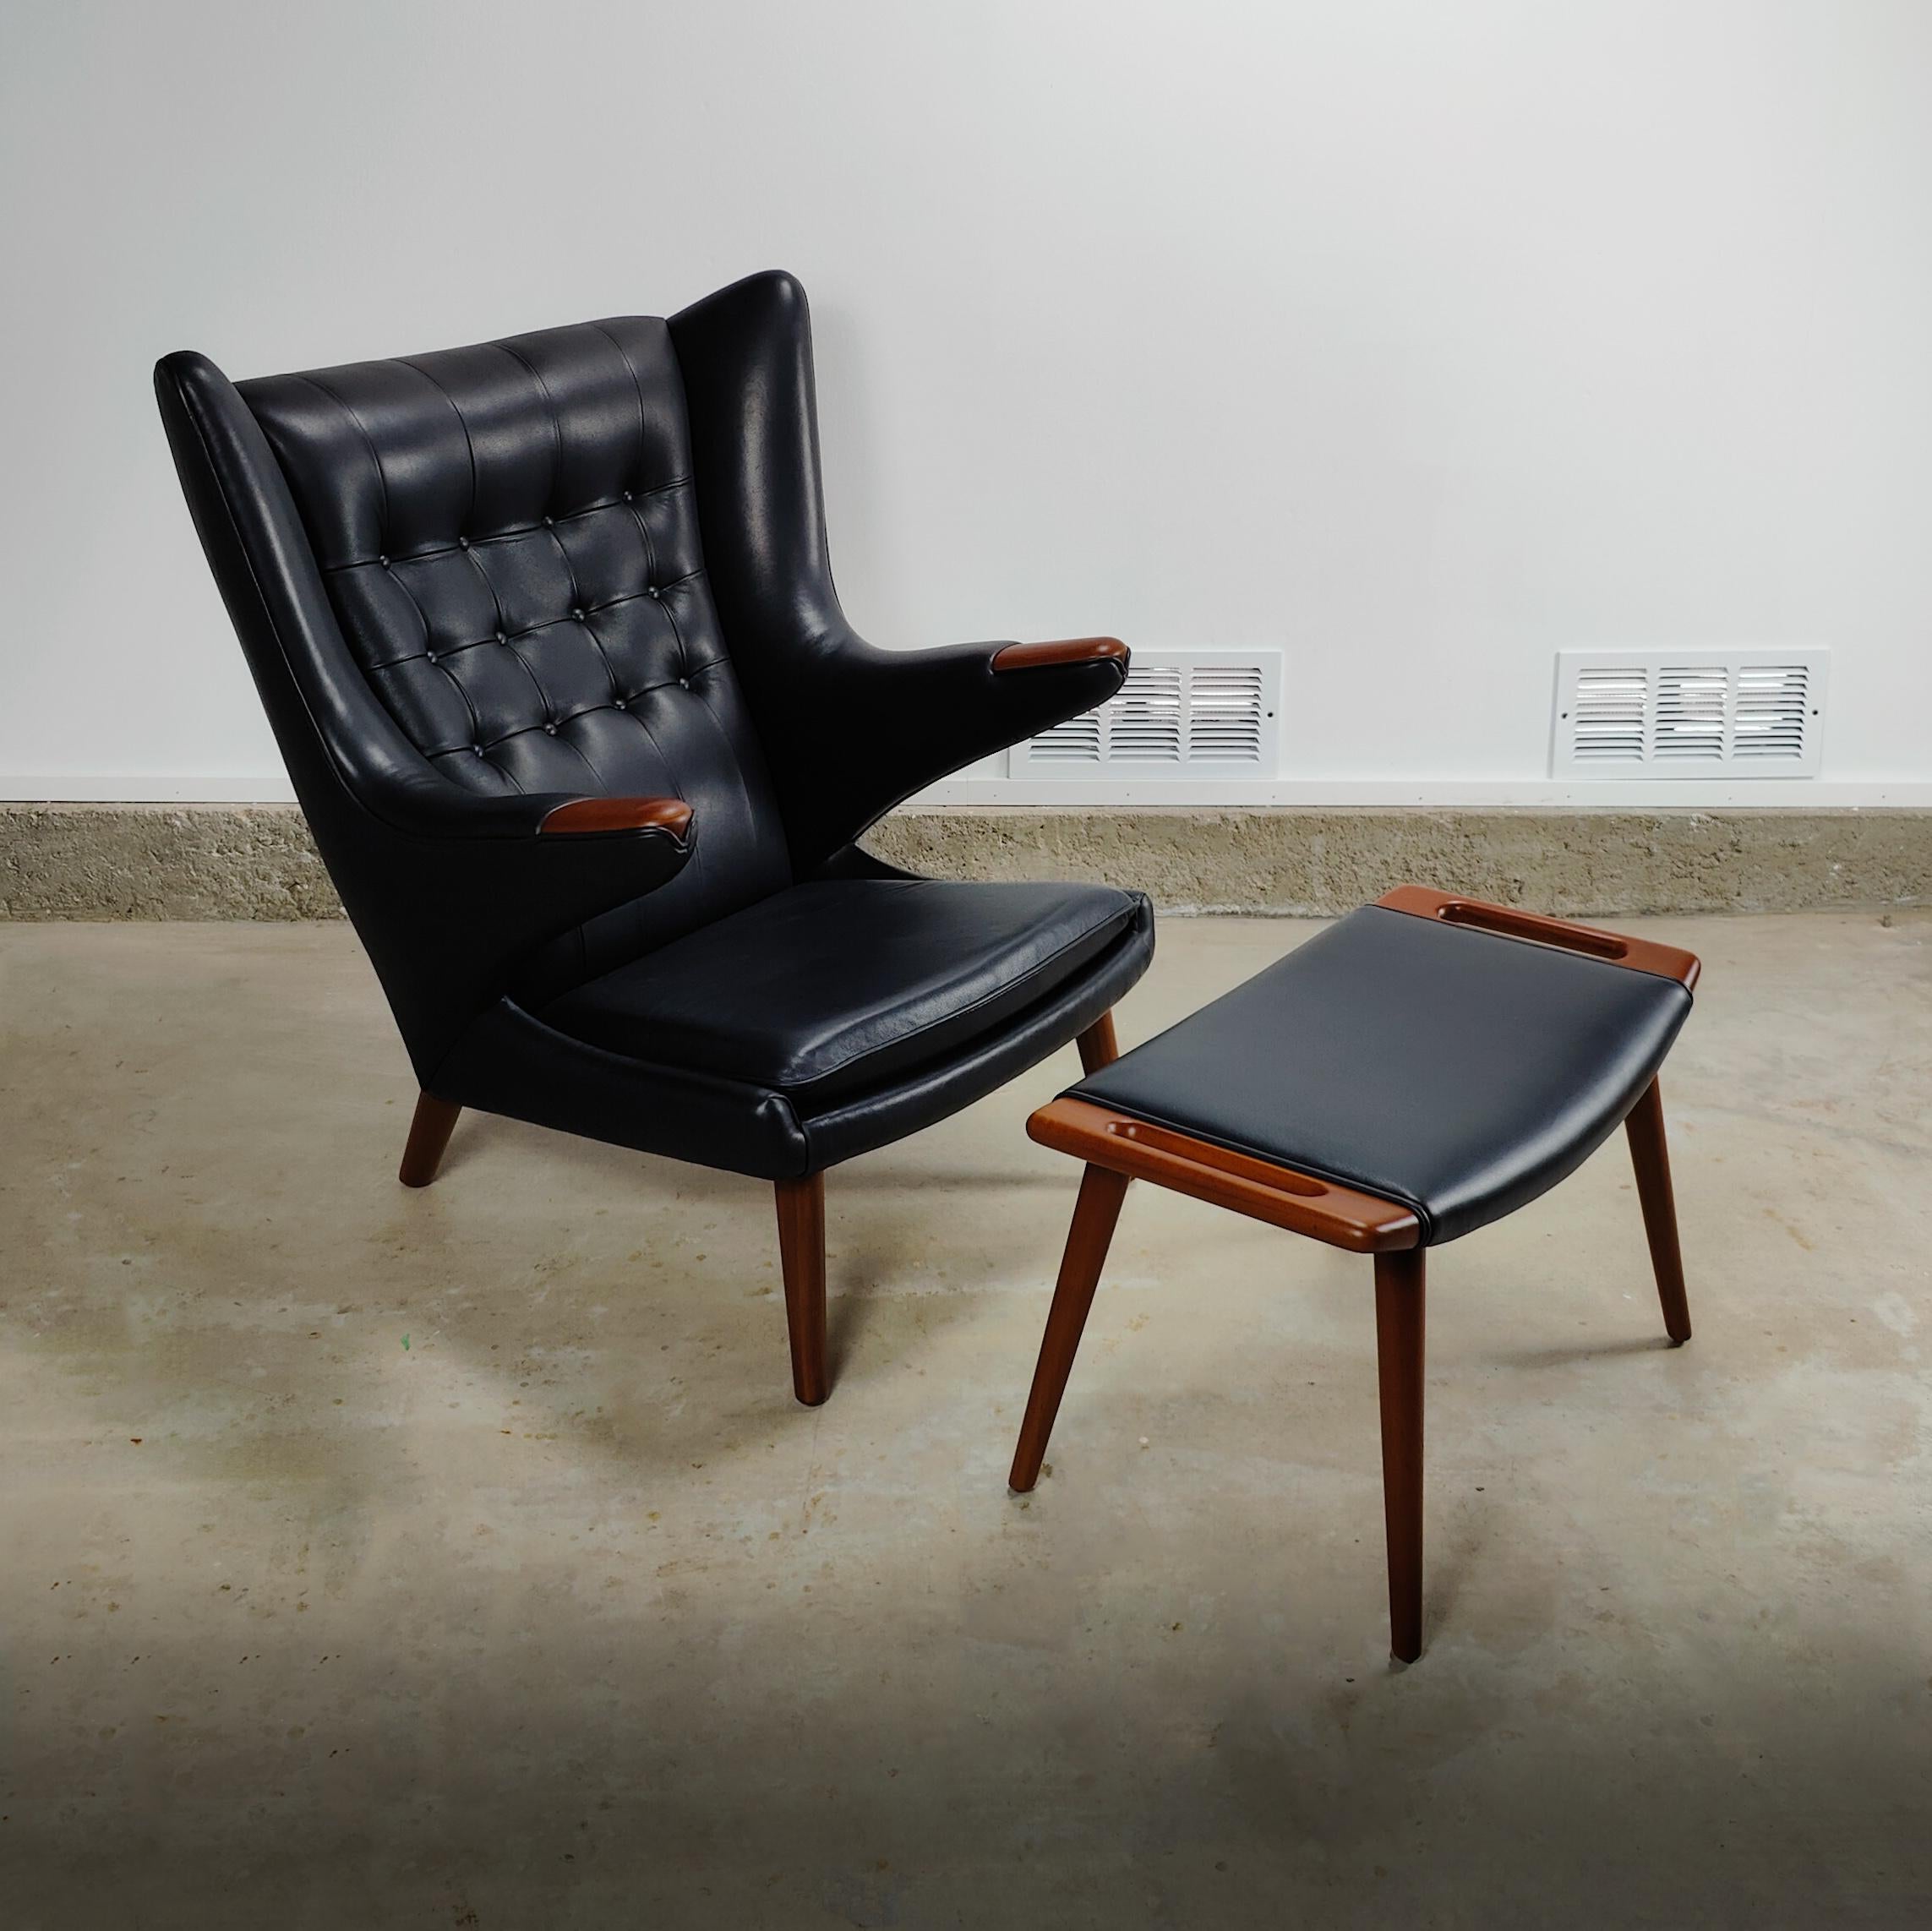 Laissez-vous séduire par l'attrait classique et intemporel du design moderne du milieu du siècle avec cette authentique chaise et cet ottoman Papa Bear de Hans Wegner. Les deux pièces ont été fabriquées par la célèbre société A.P. Volé dans les